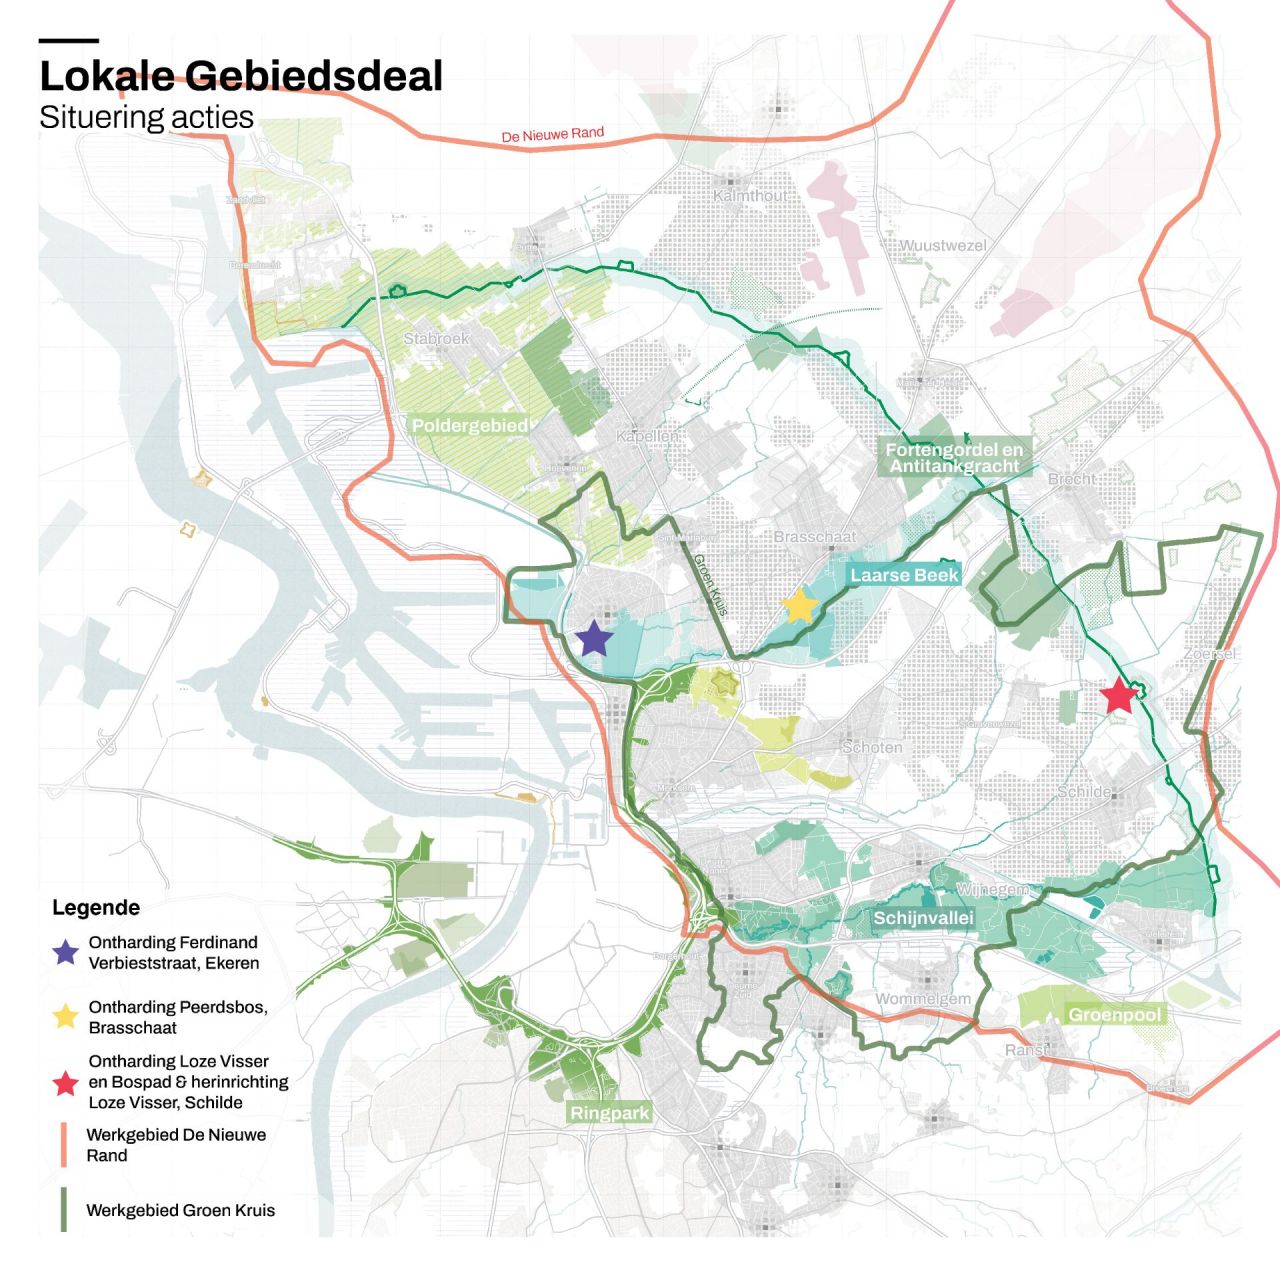 Kaart met werkgebied De Nieuwe Rand en werkgebied Groen Kruis, met daarop de locaties van de drie afzonderlijke projecten in Ekeren, Brasschaat en Schilde.